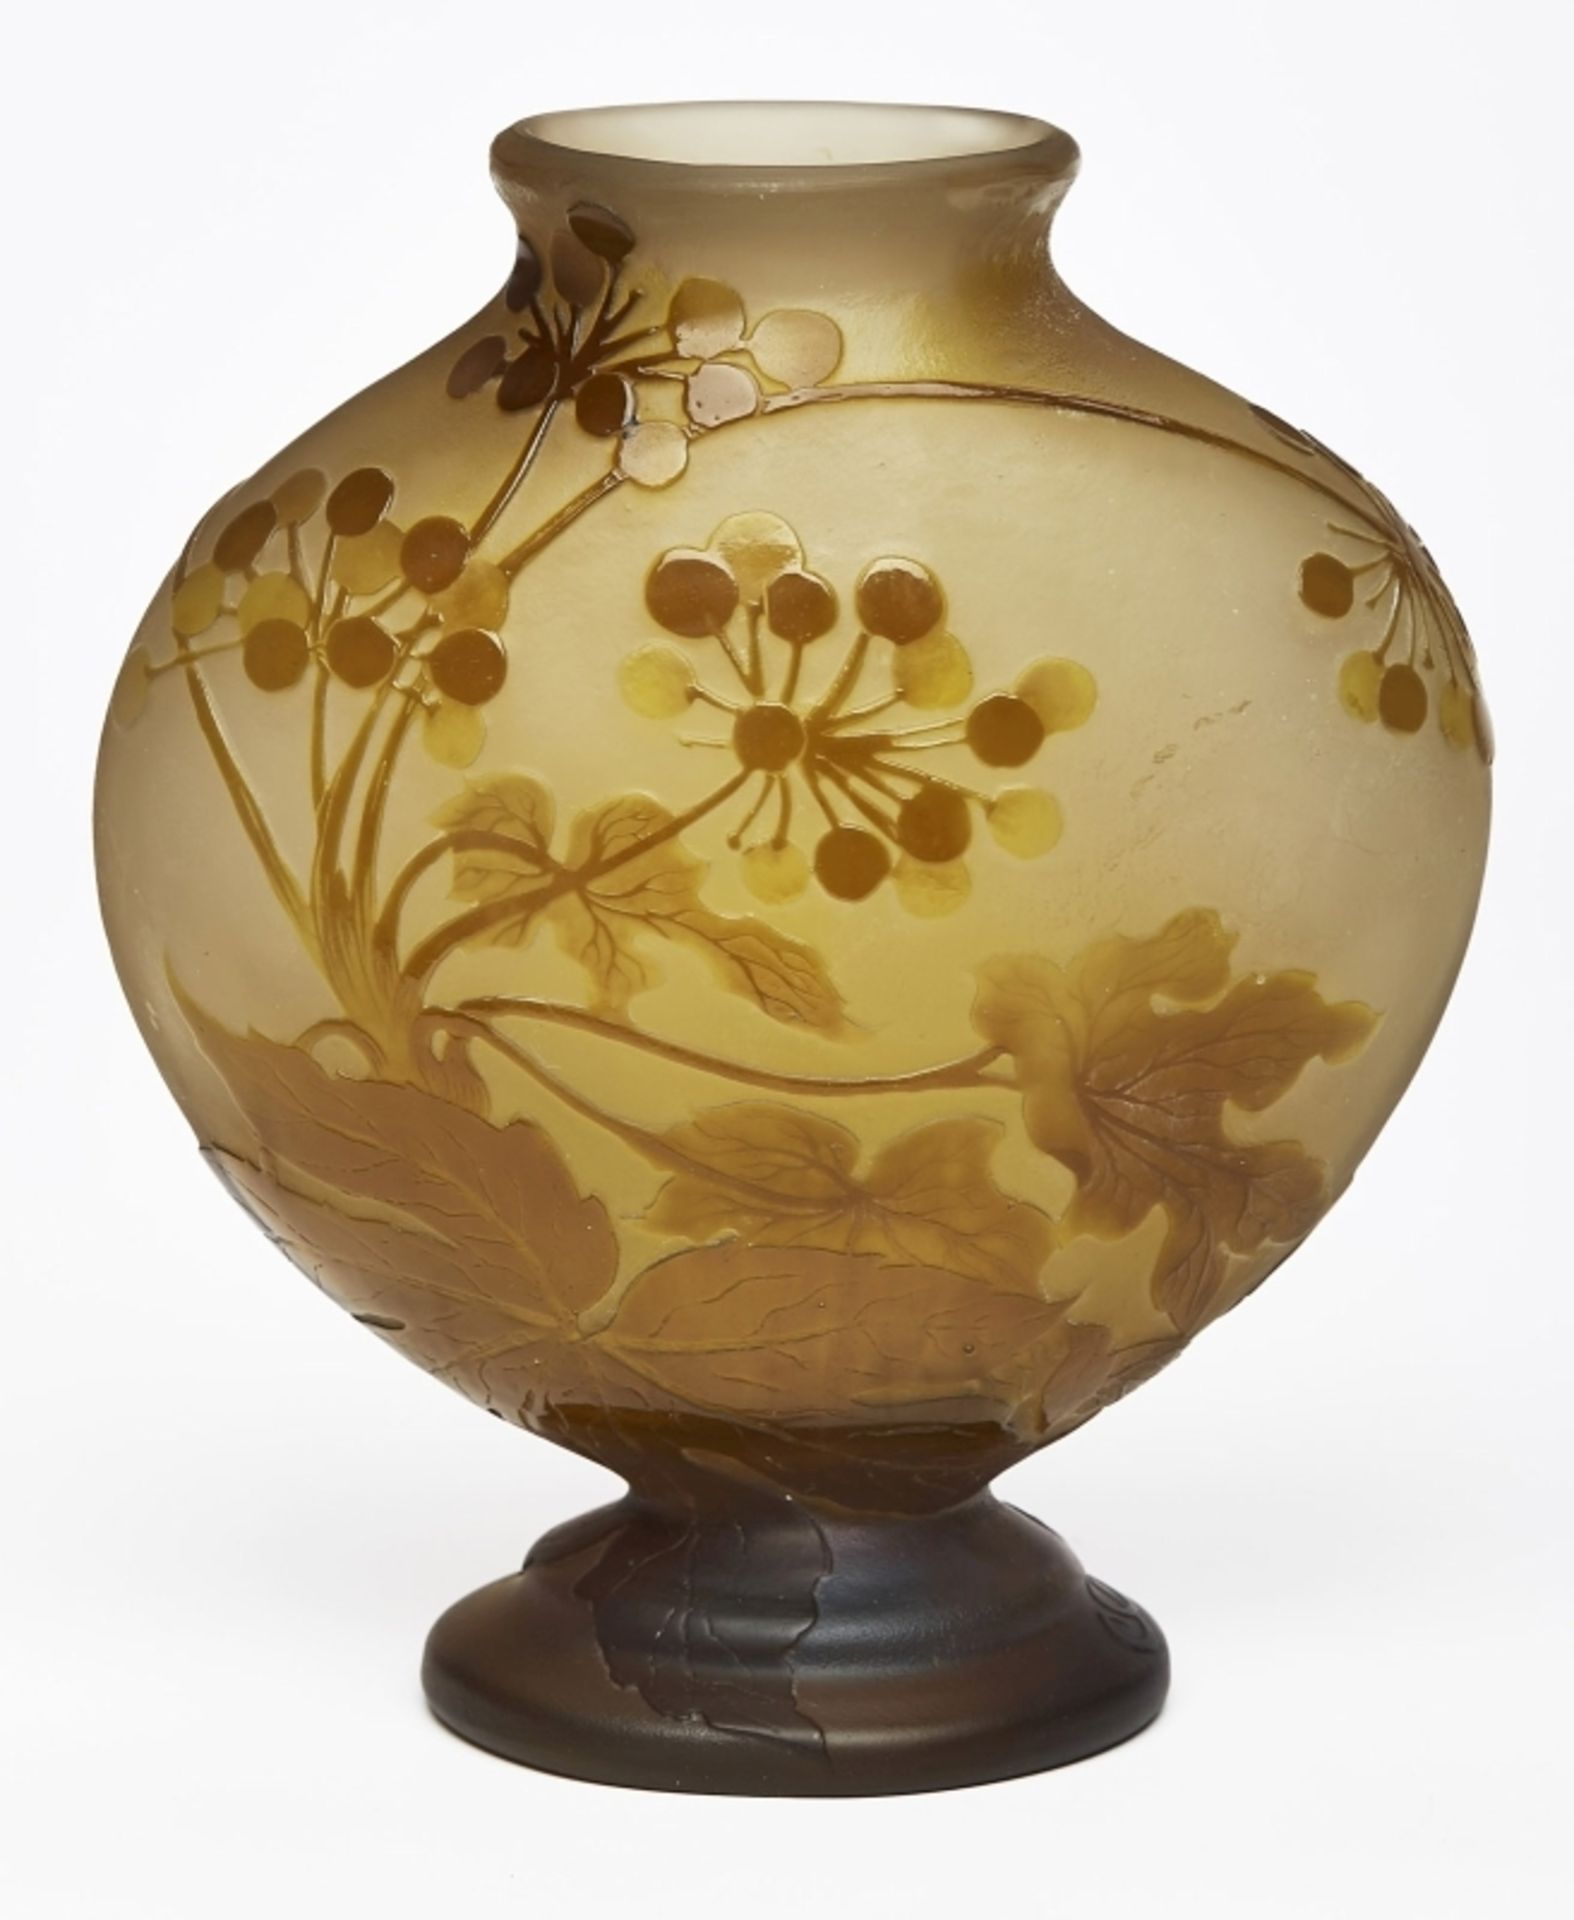 Vase mit Beerendekor, Jugendstil, Gallé um 1915.